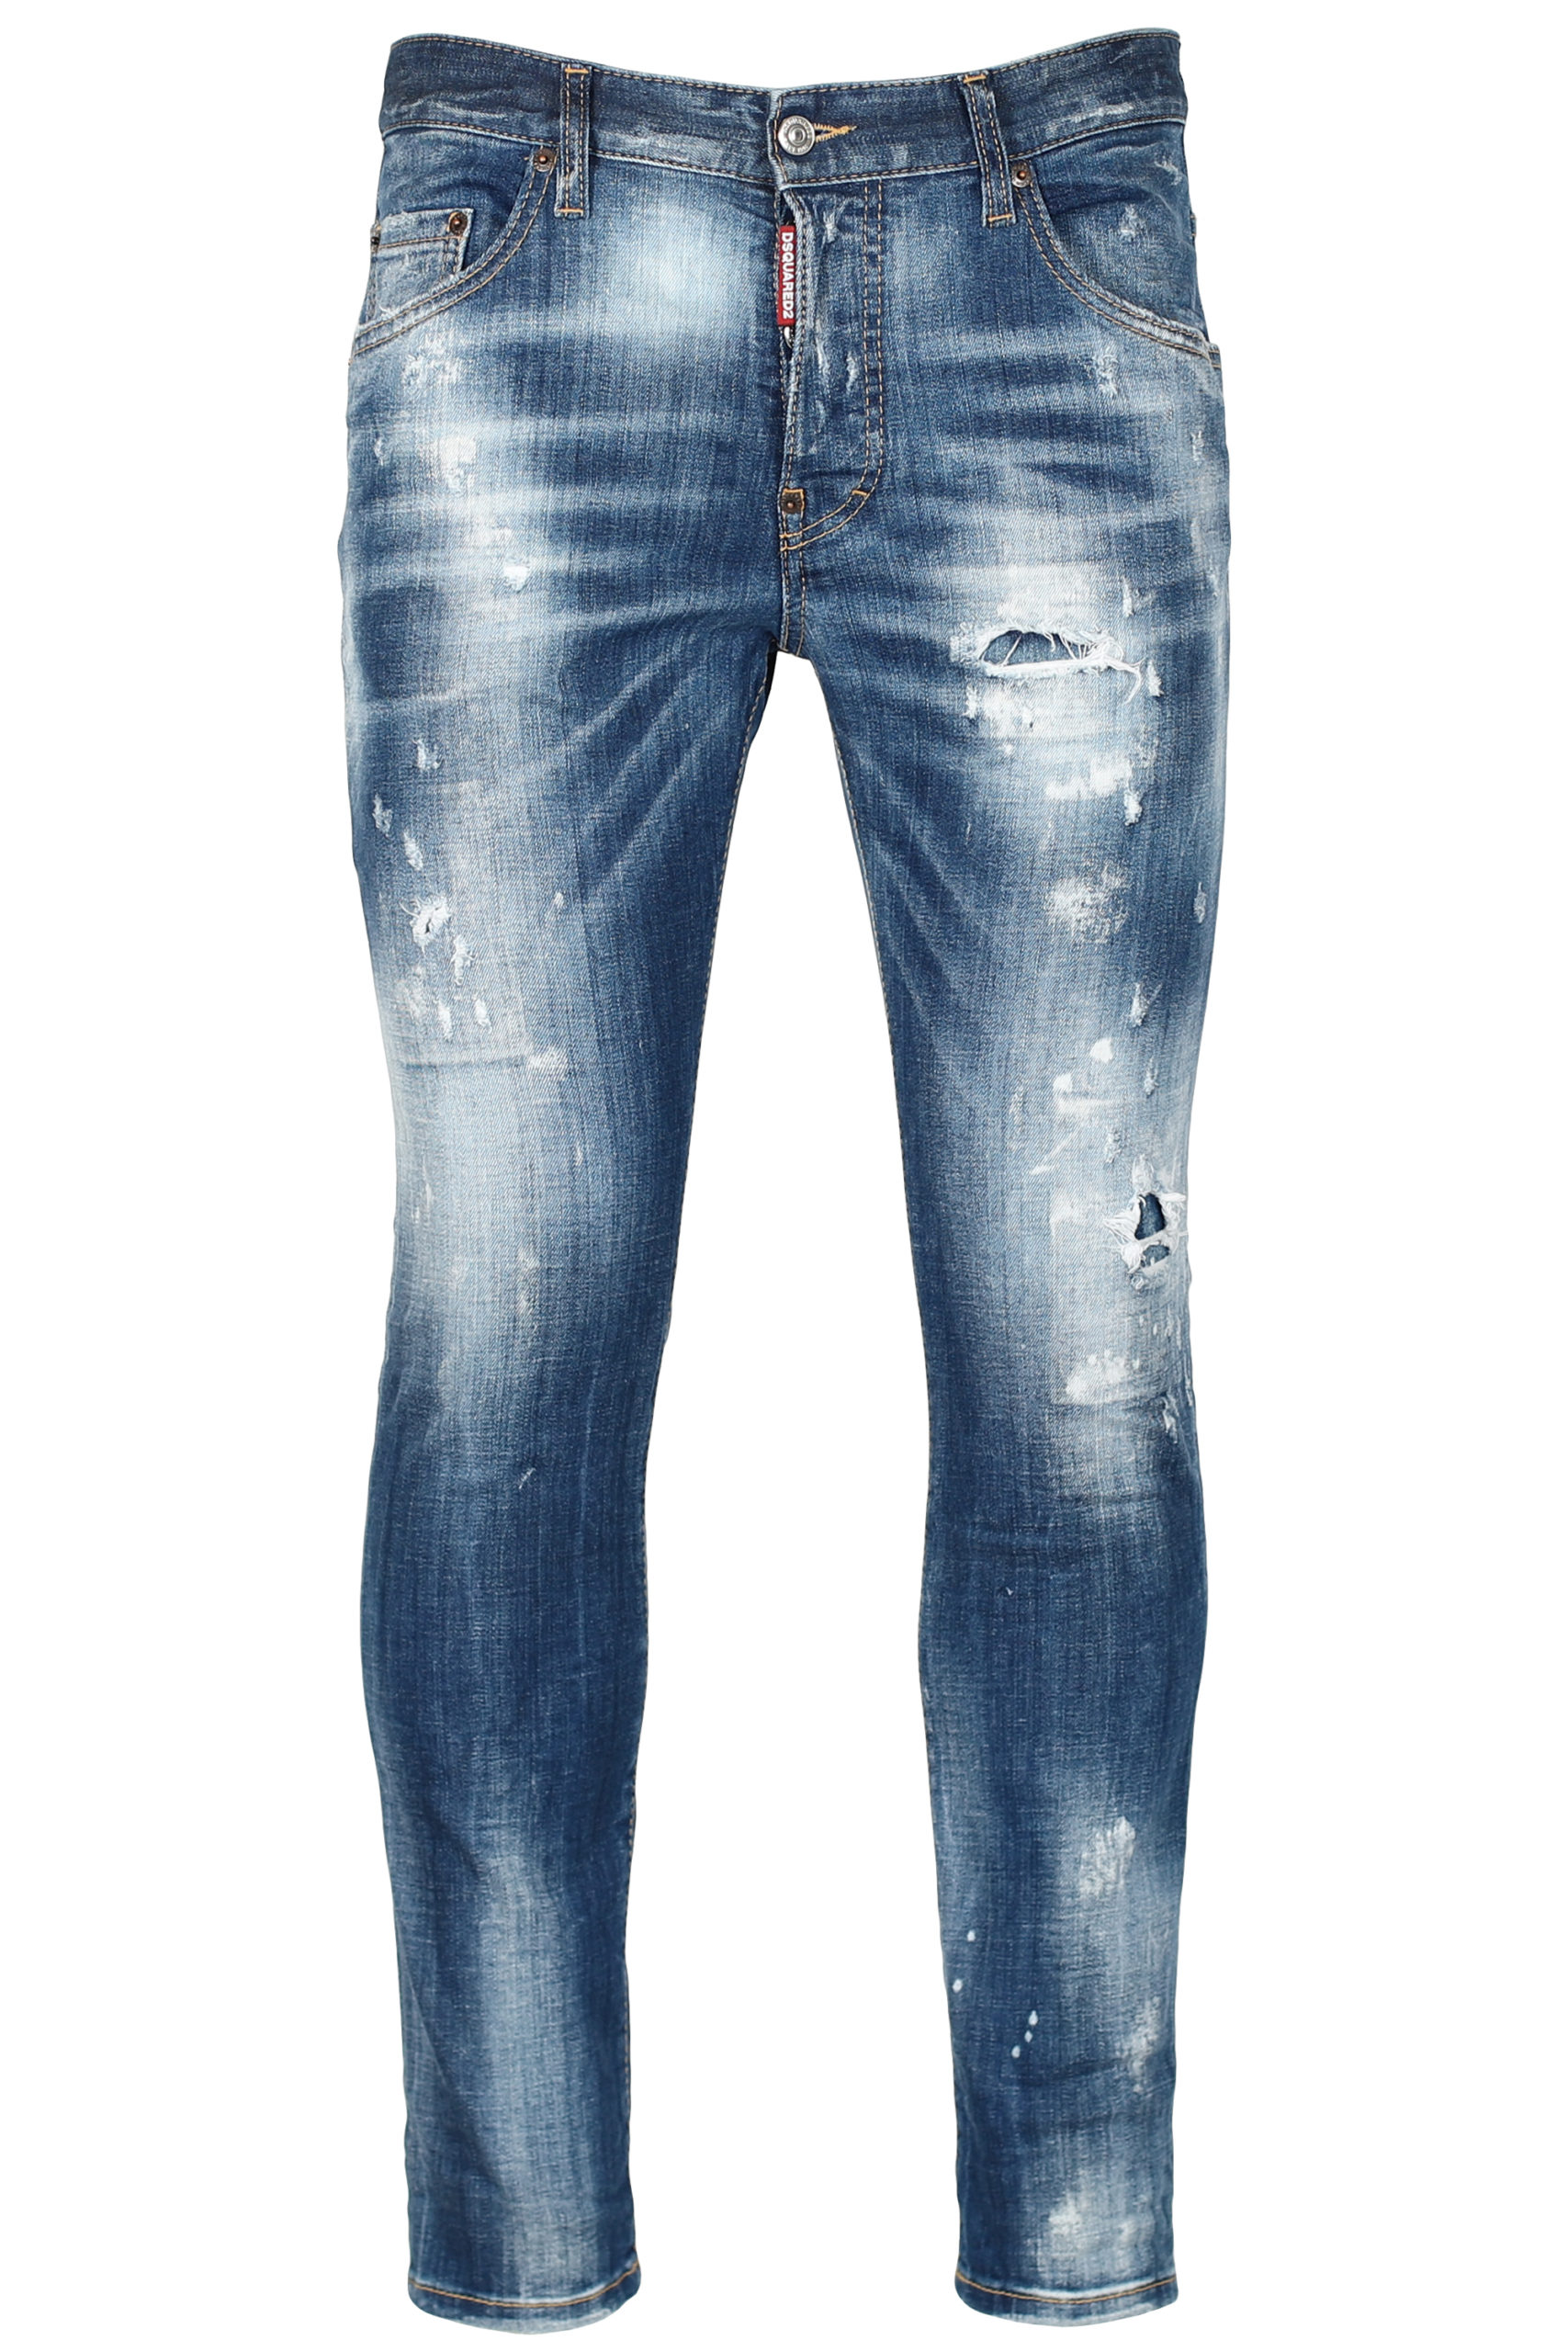 - Pantalón vaquero "Skater" azul desgastado BLS Fashion